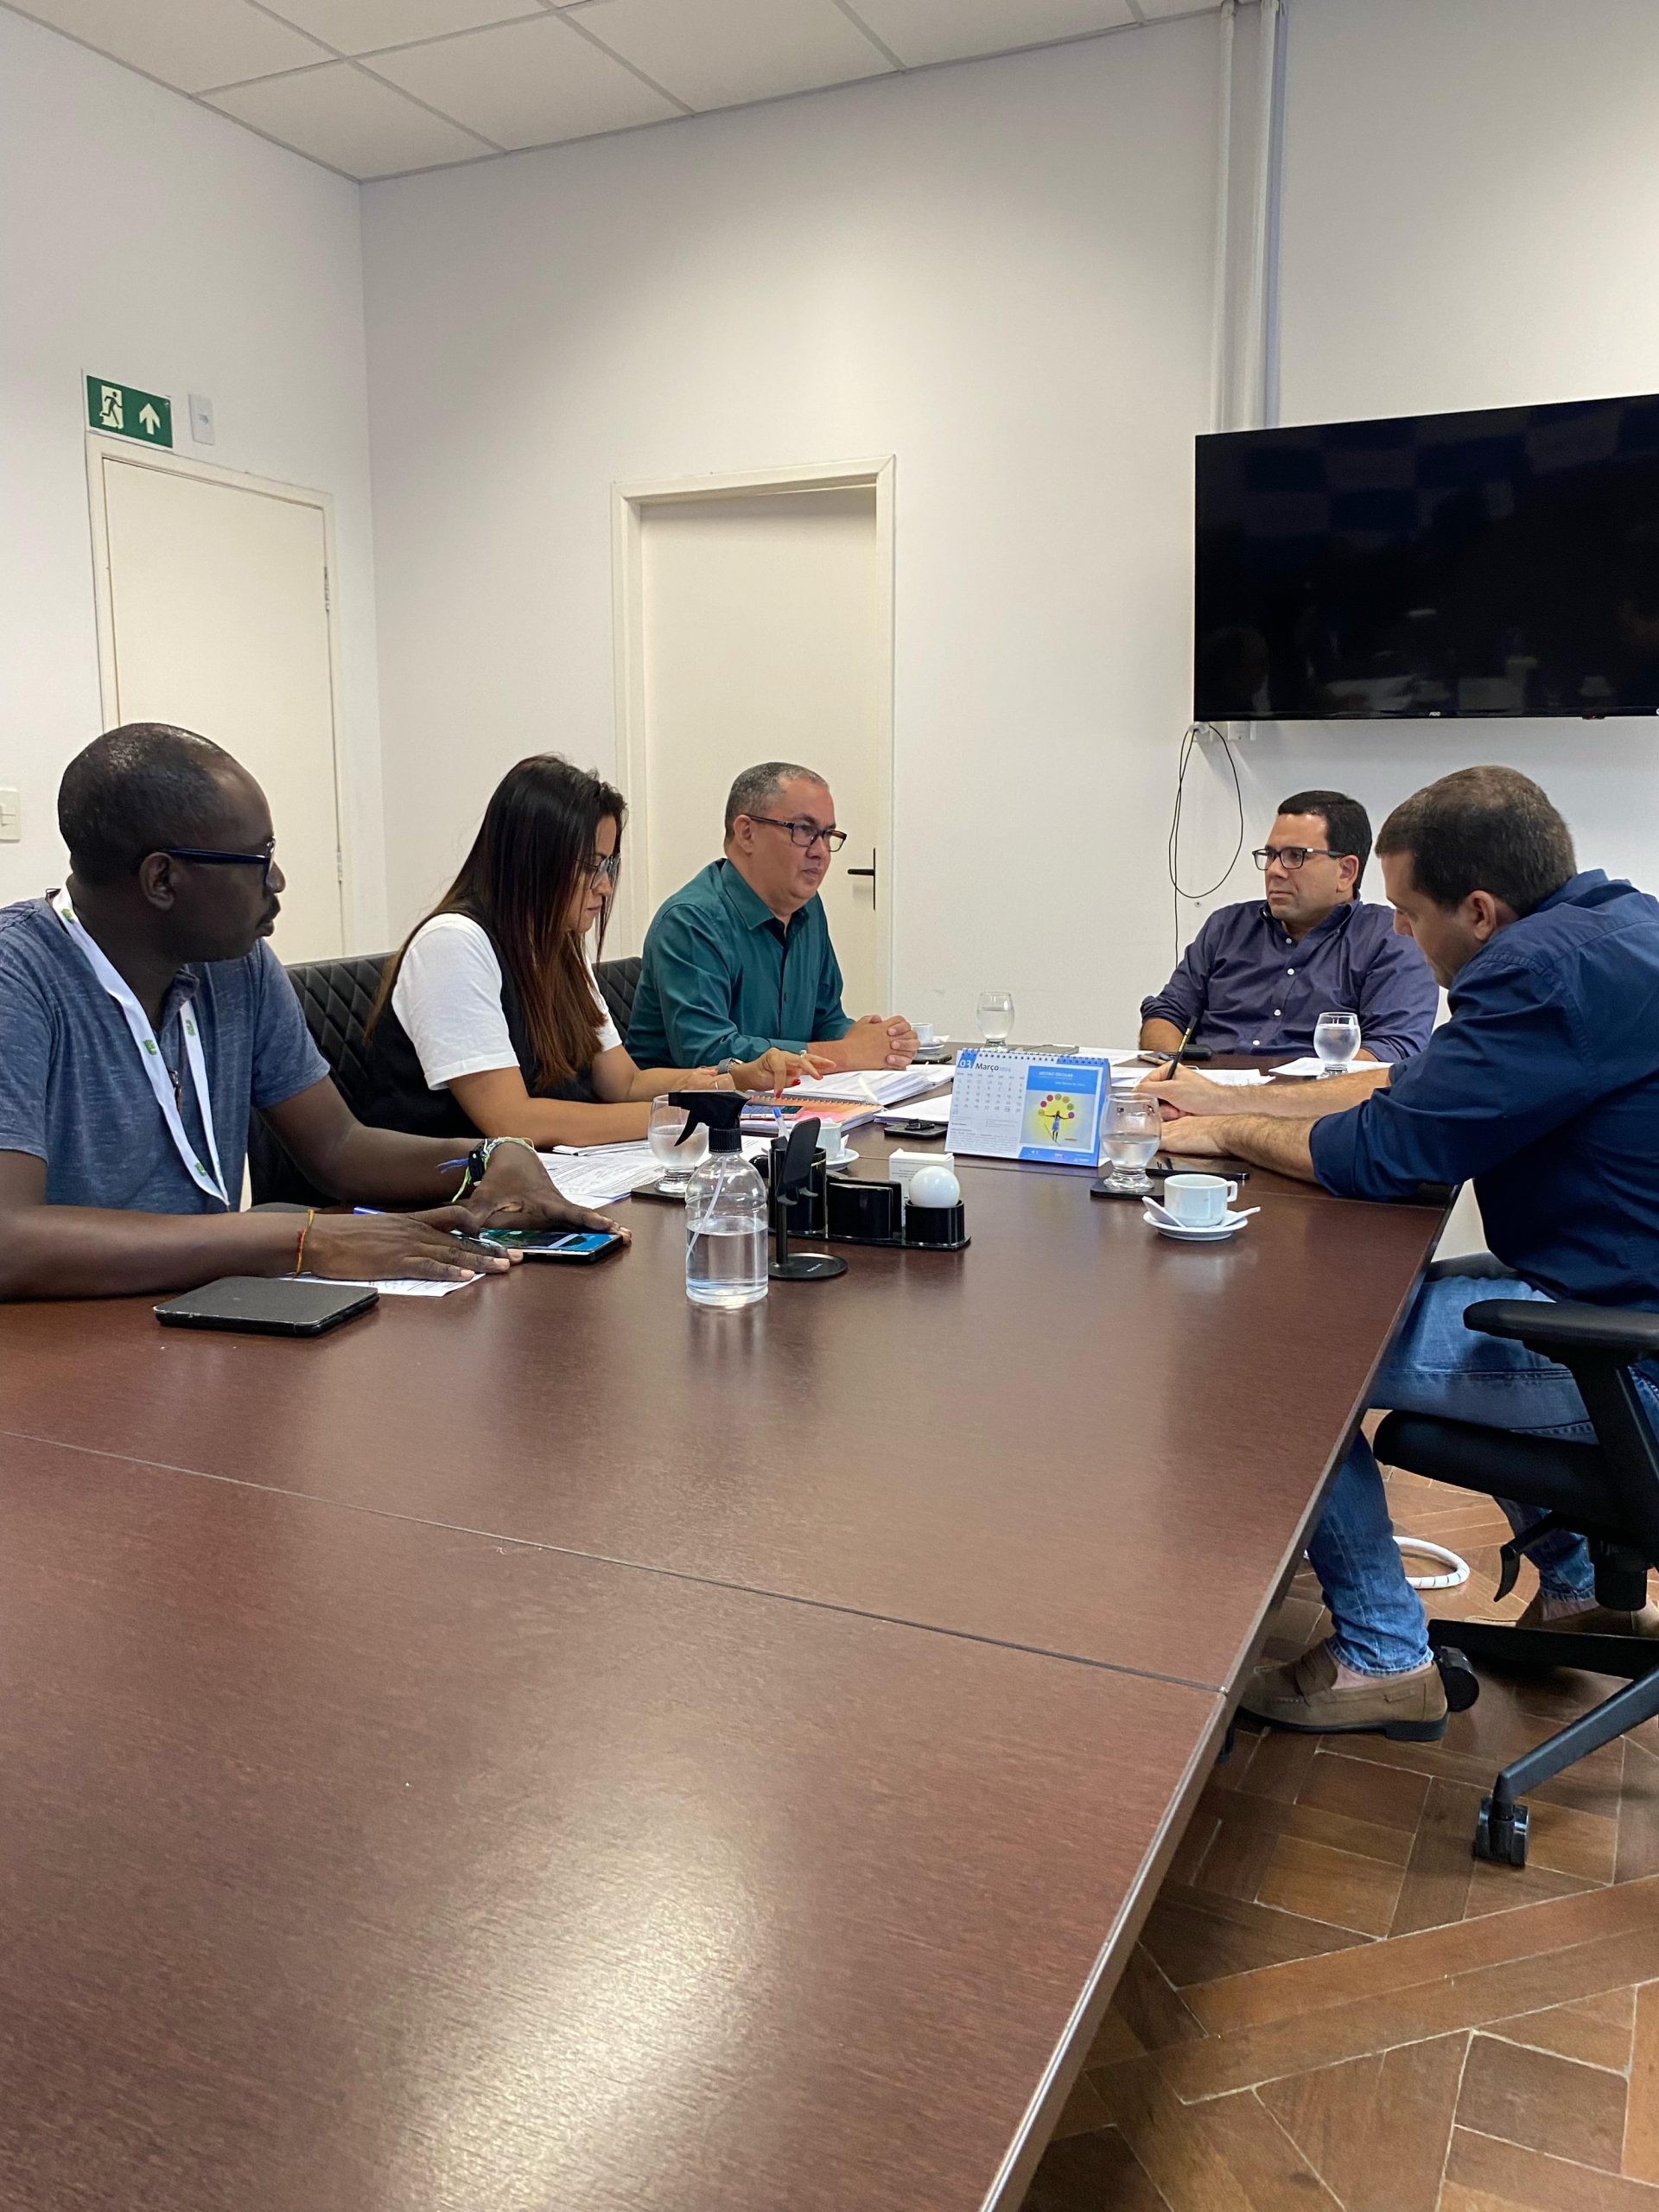 Luta não acaba: APLB mantém reuniões com Prefeitura de Salvador para tratar de pontos represados